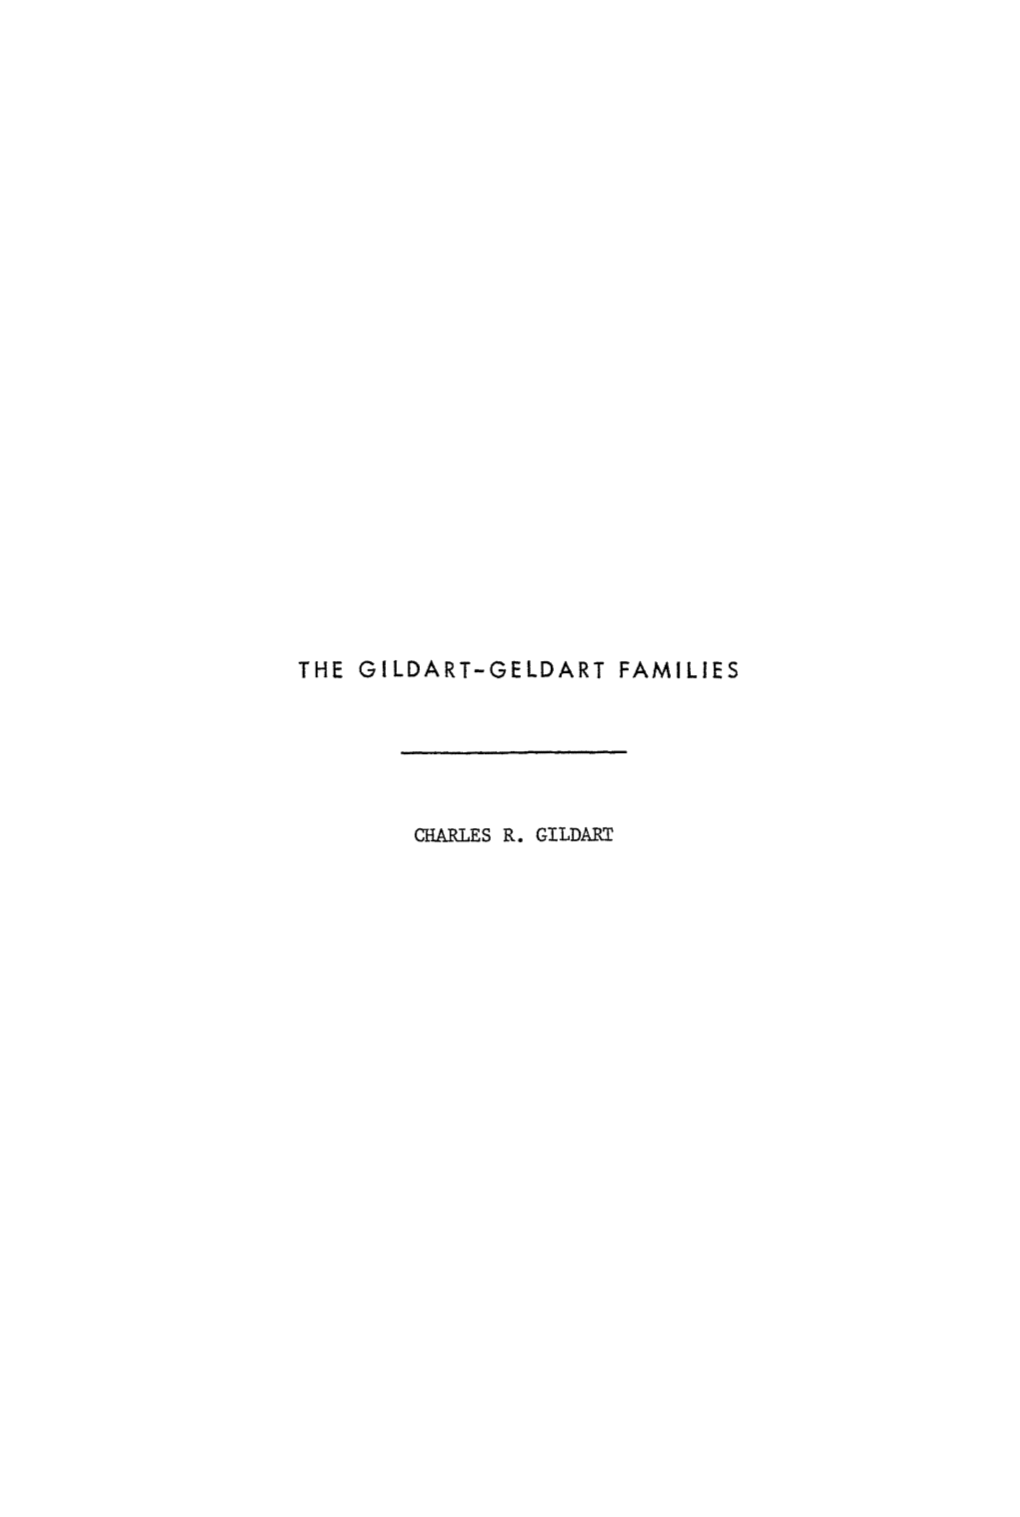 The Gildart-Geldart Families